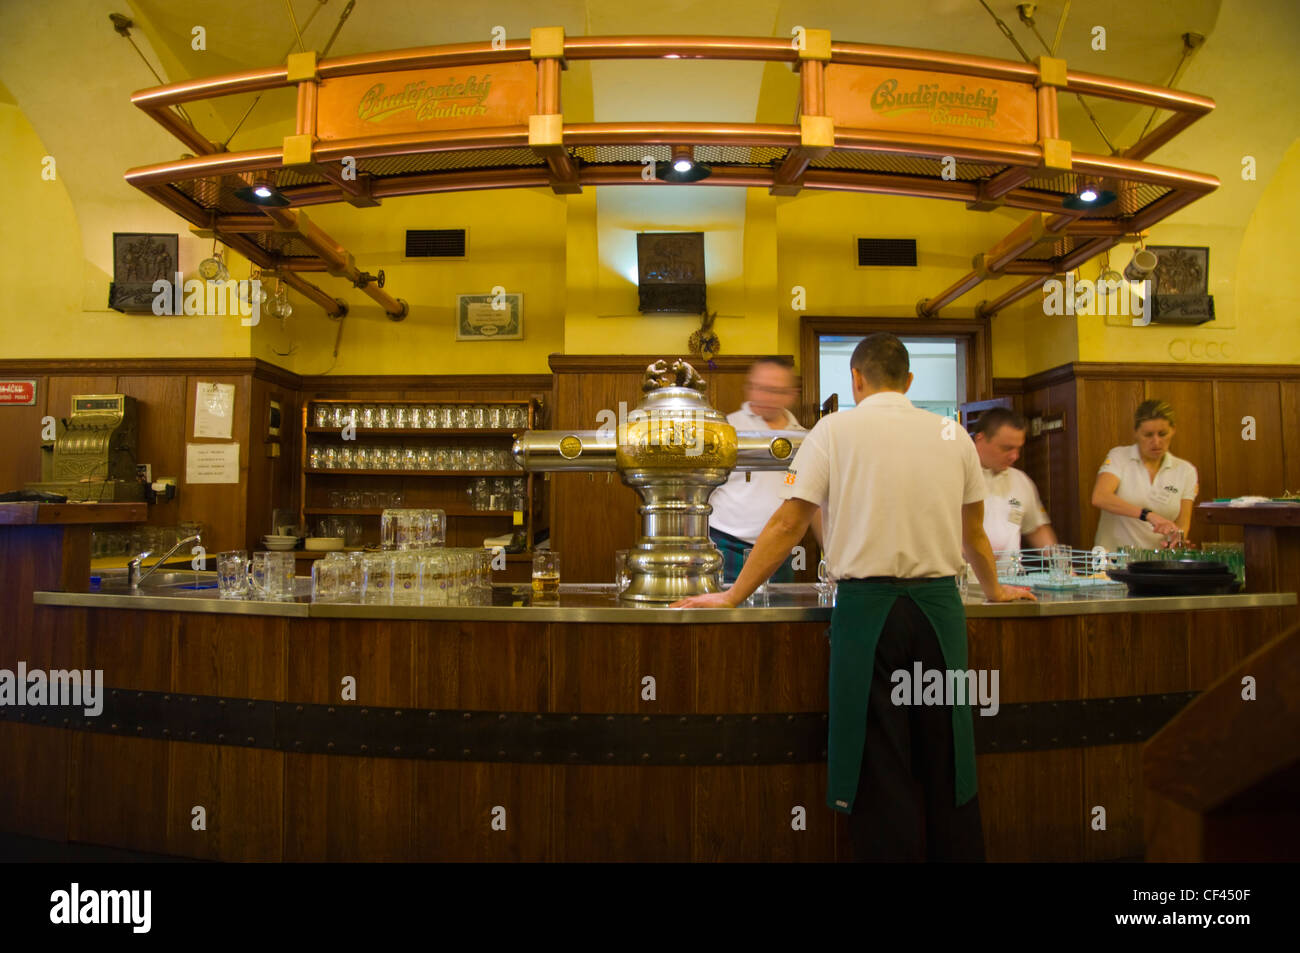 Comptoir Bar et robinets à U Medvidku microbrasserie restaurant Prague République Tchèque Europe Banque D'Images